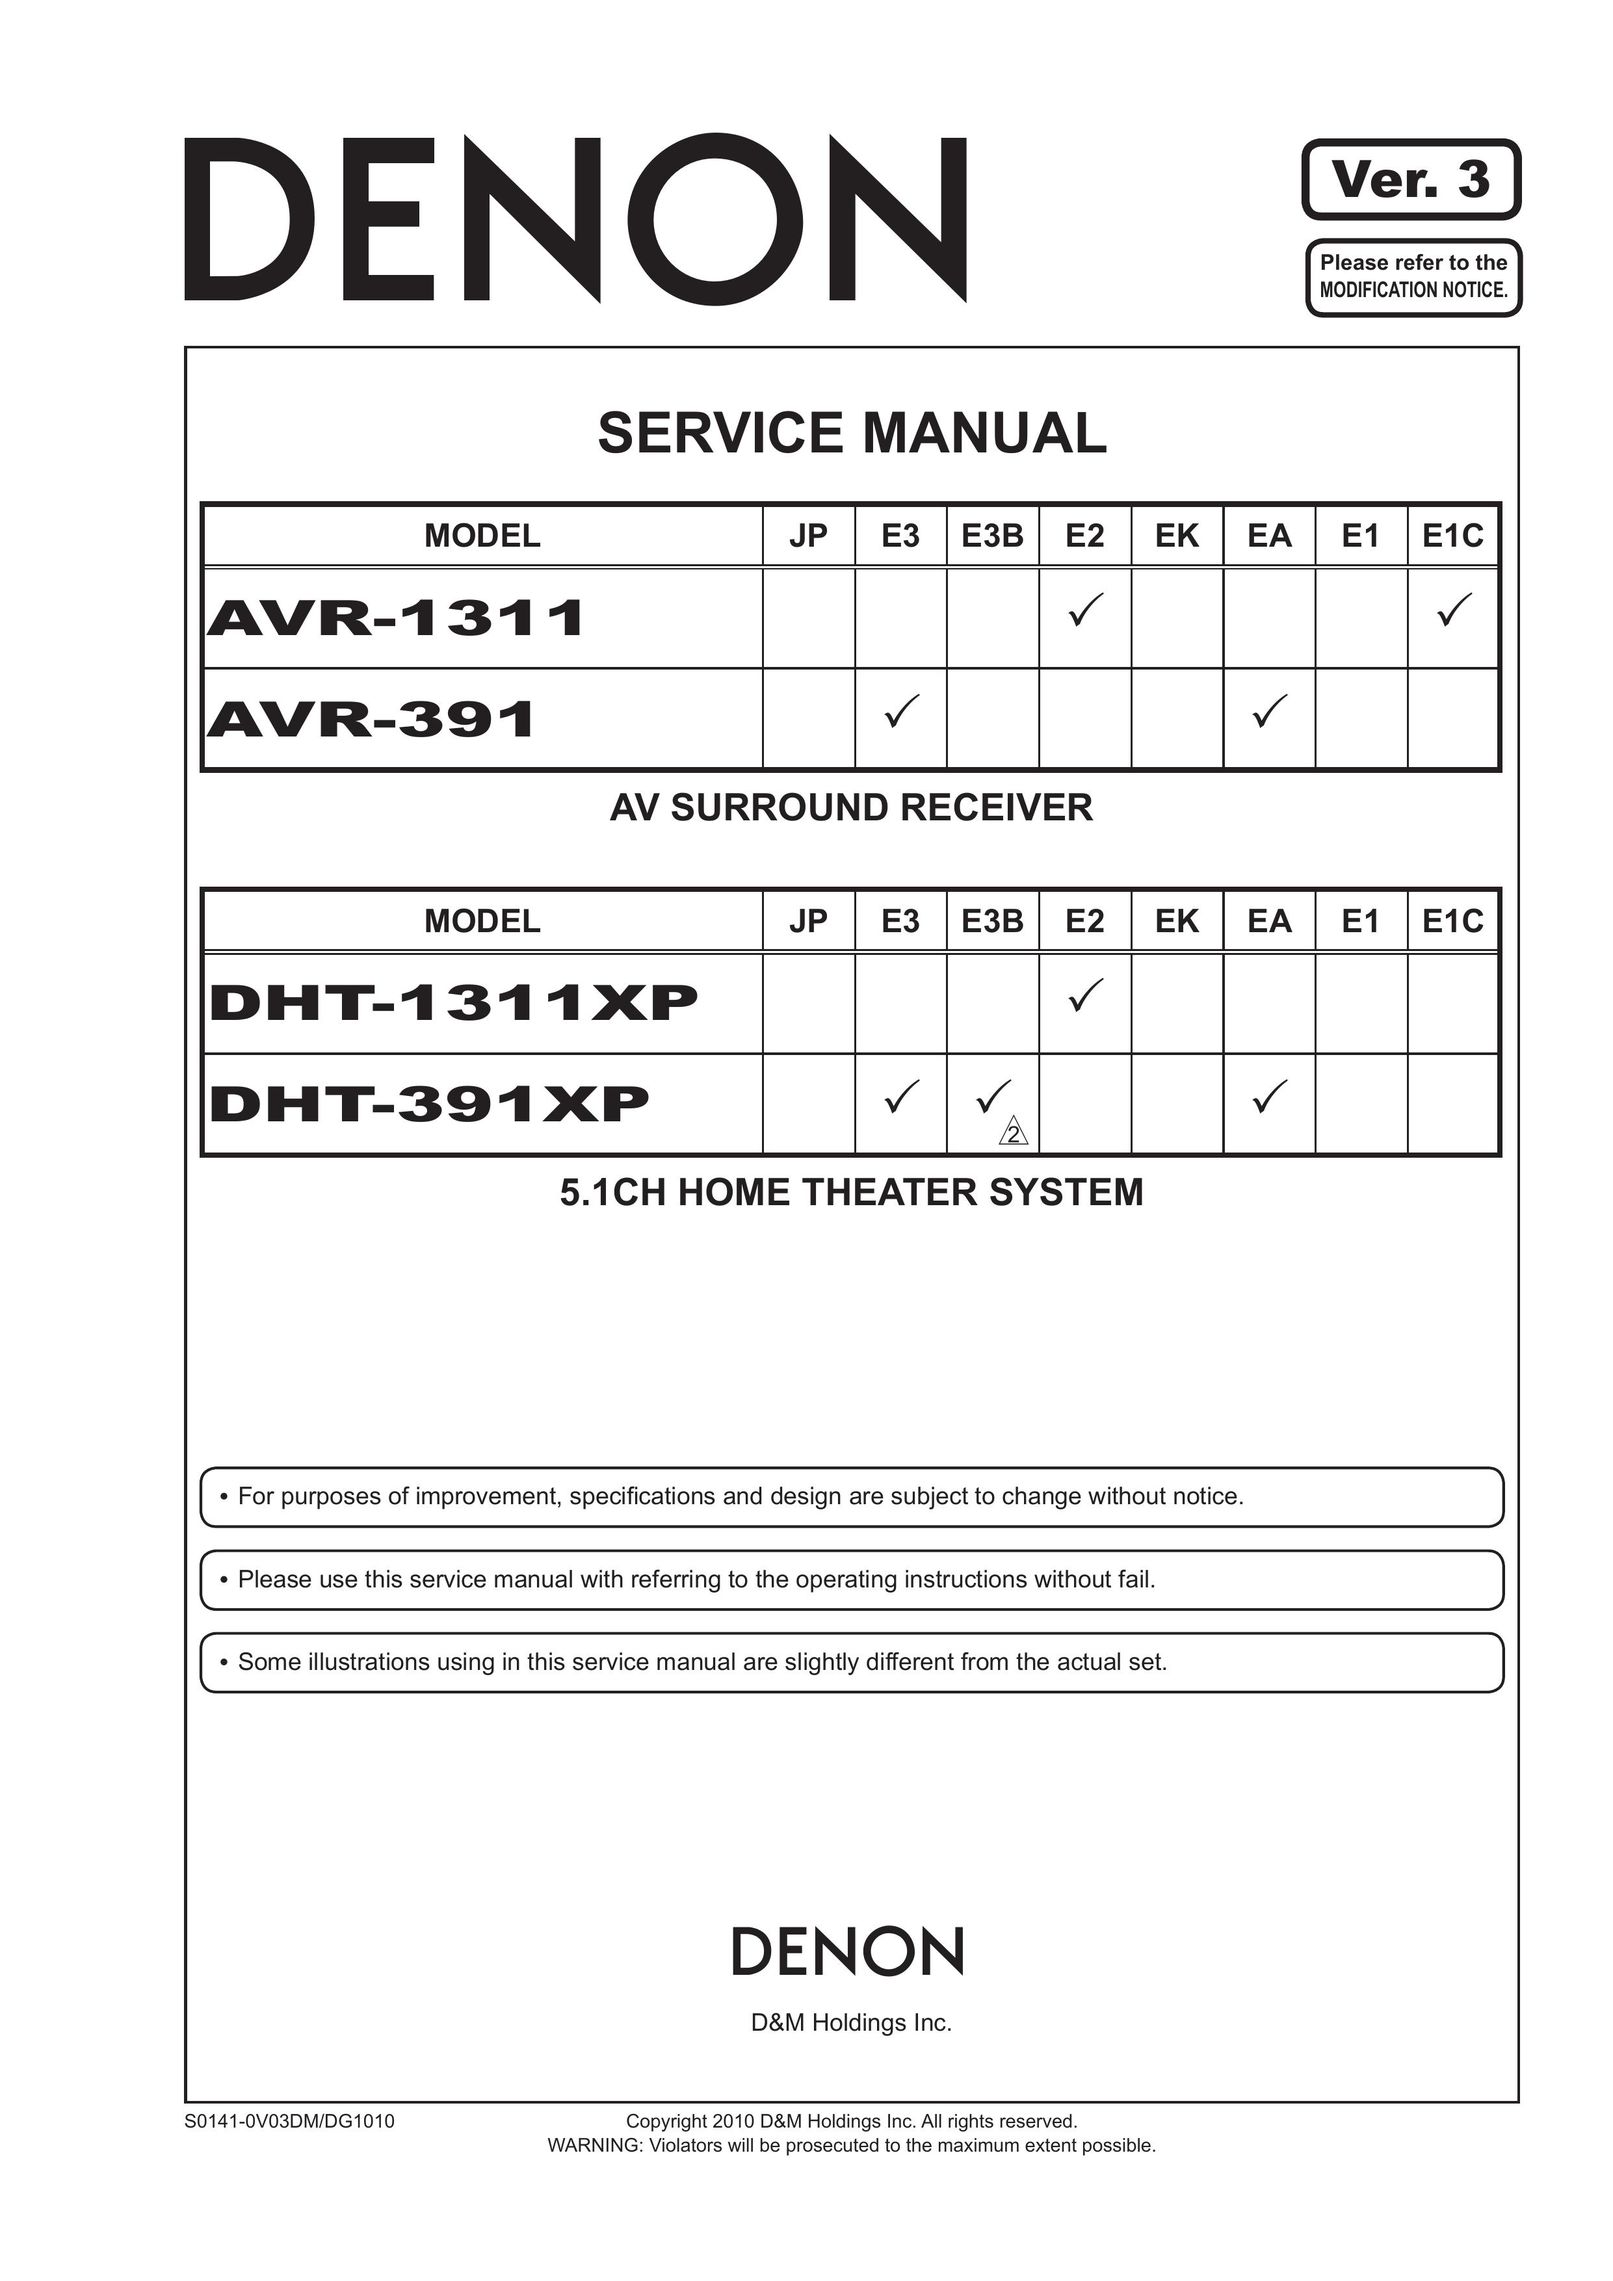 Denon DHT-391XP DVD Player User Manual